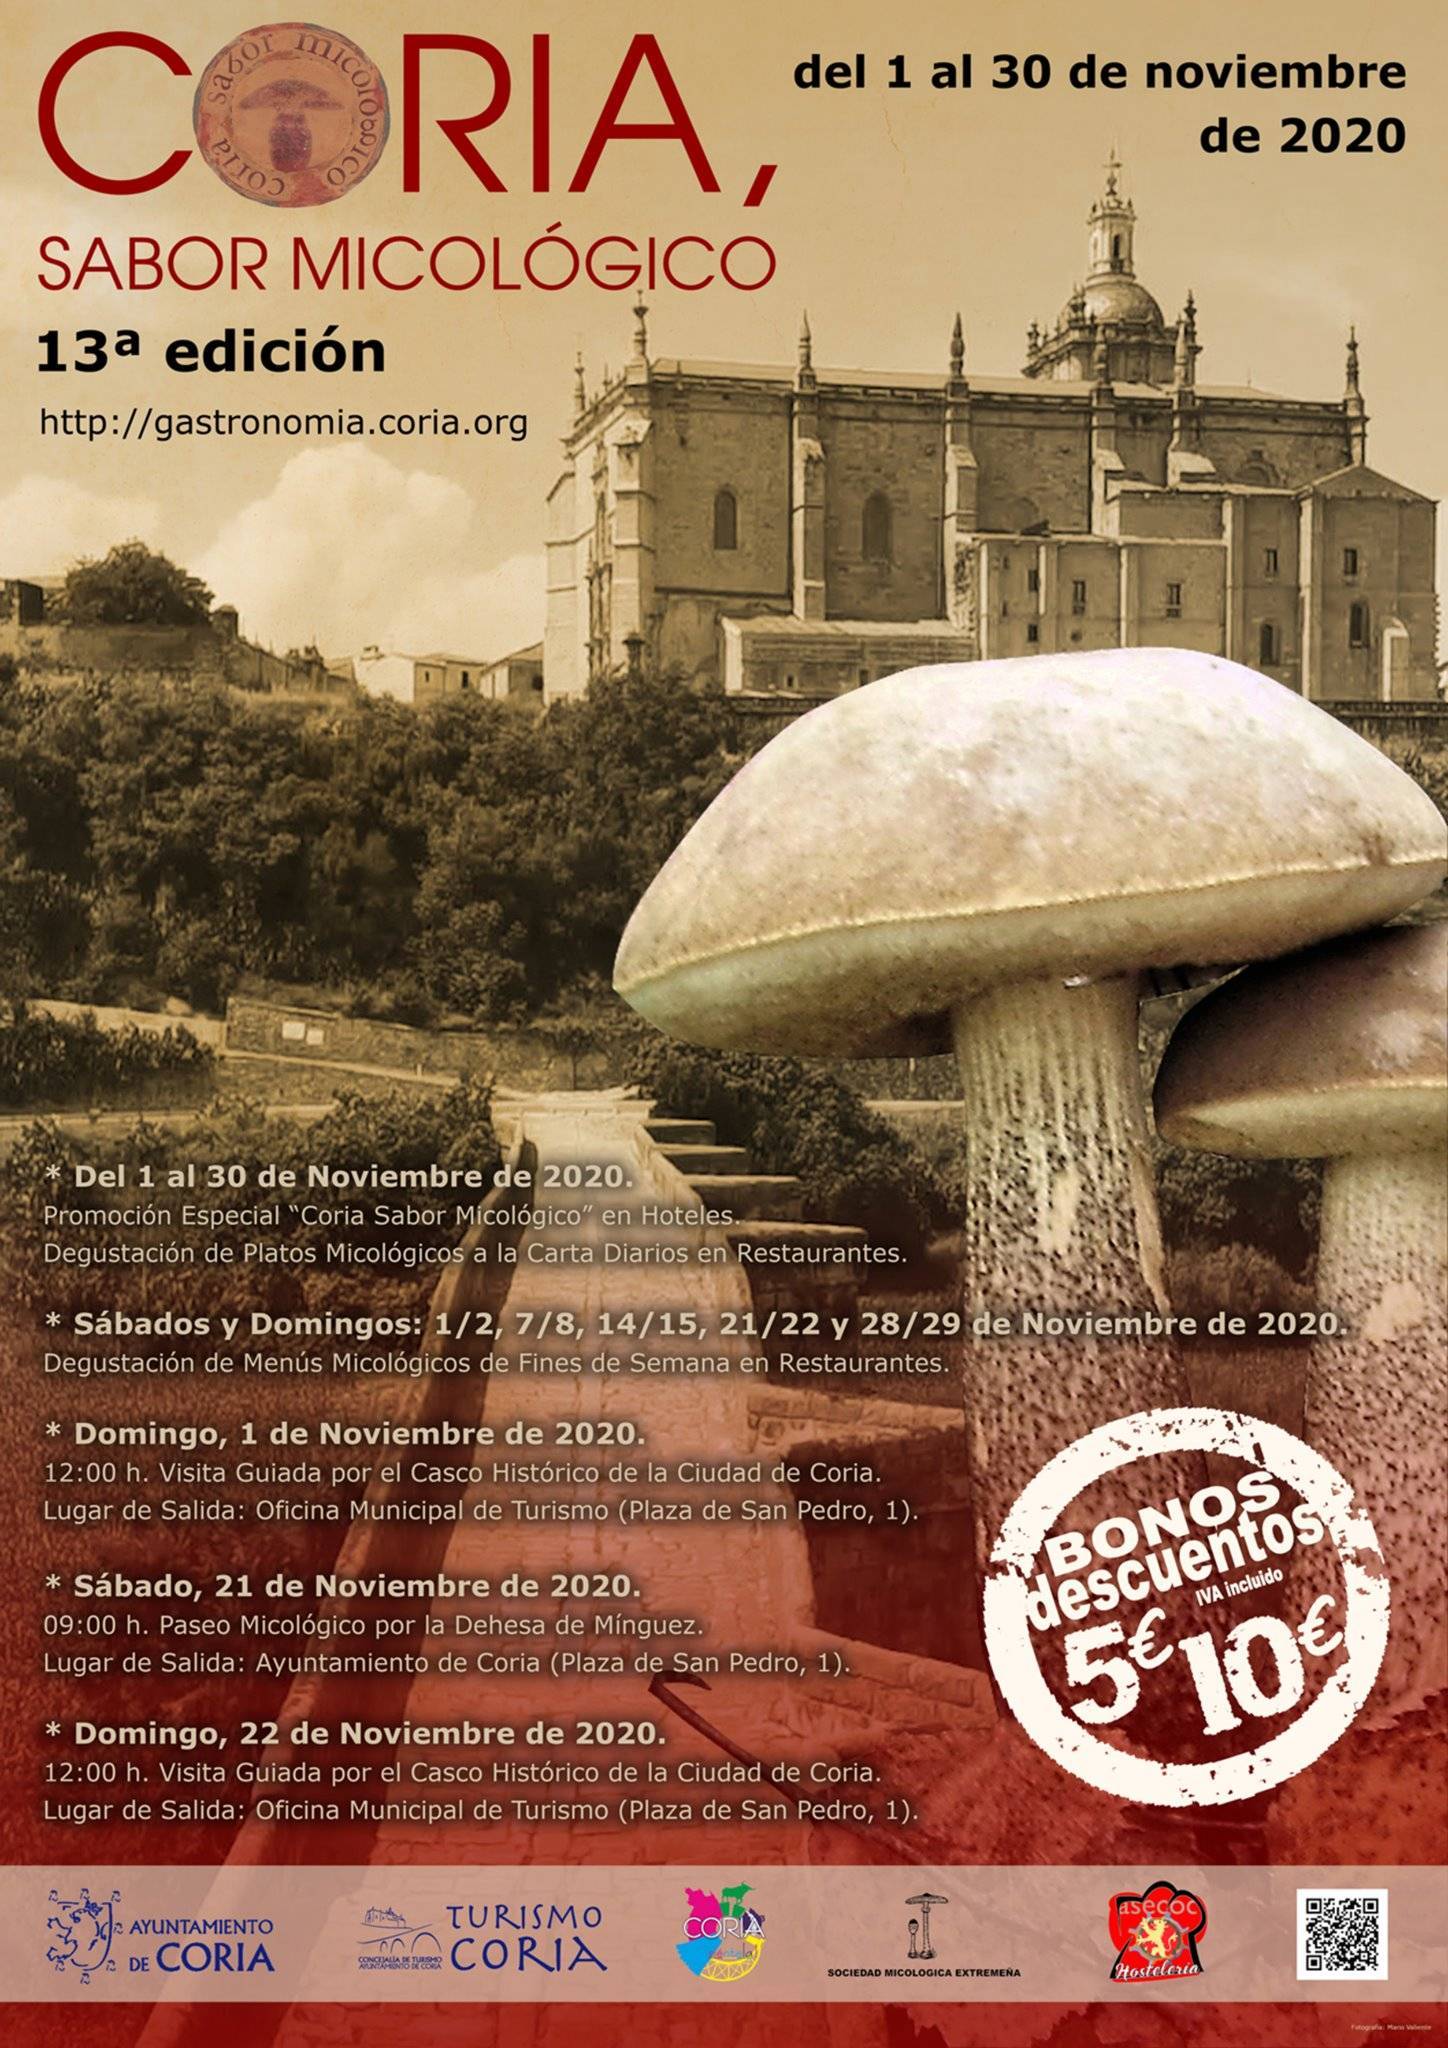 Sabor micológico (2020) - Coria (Cáceres) 1